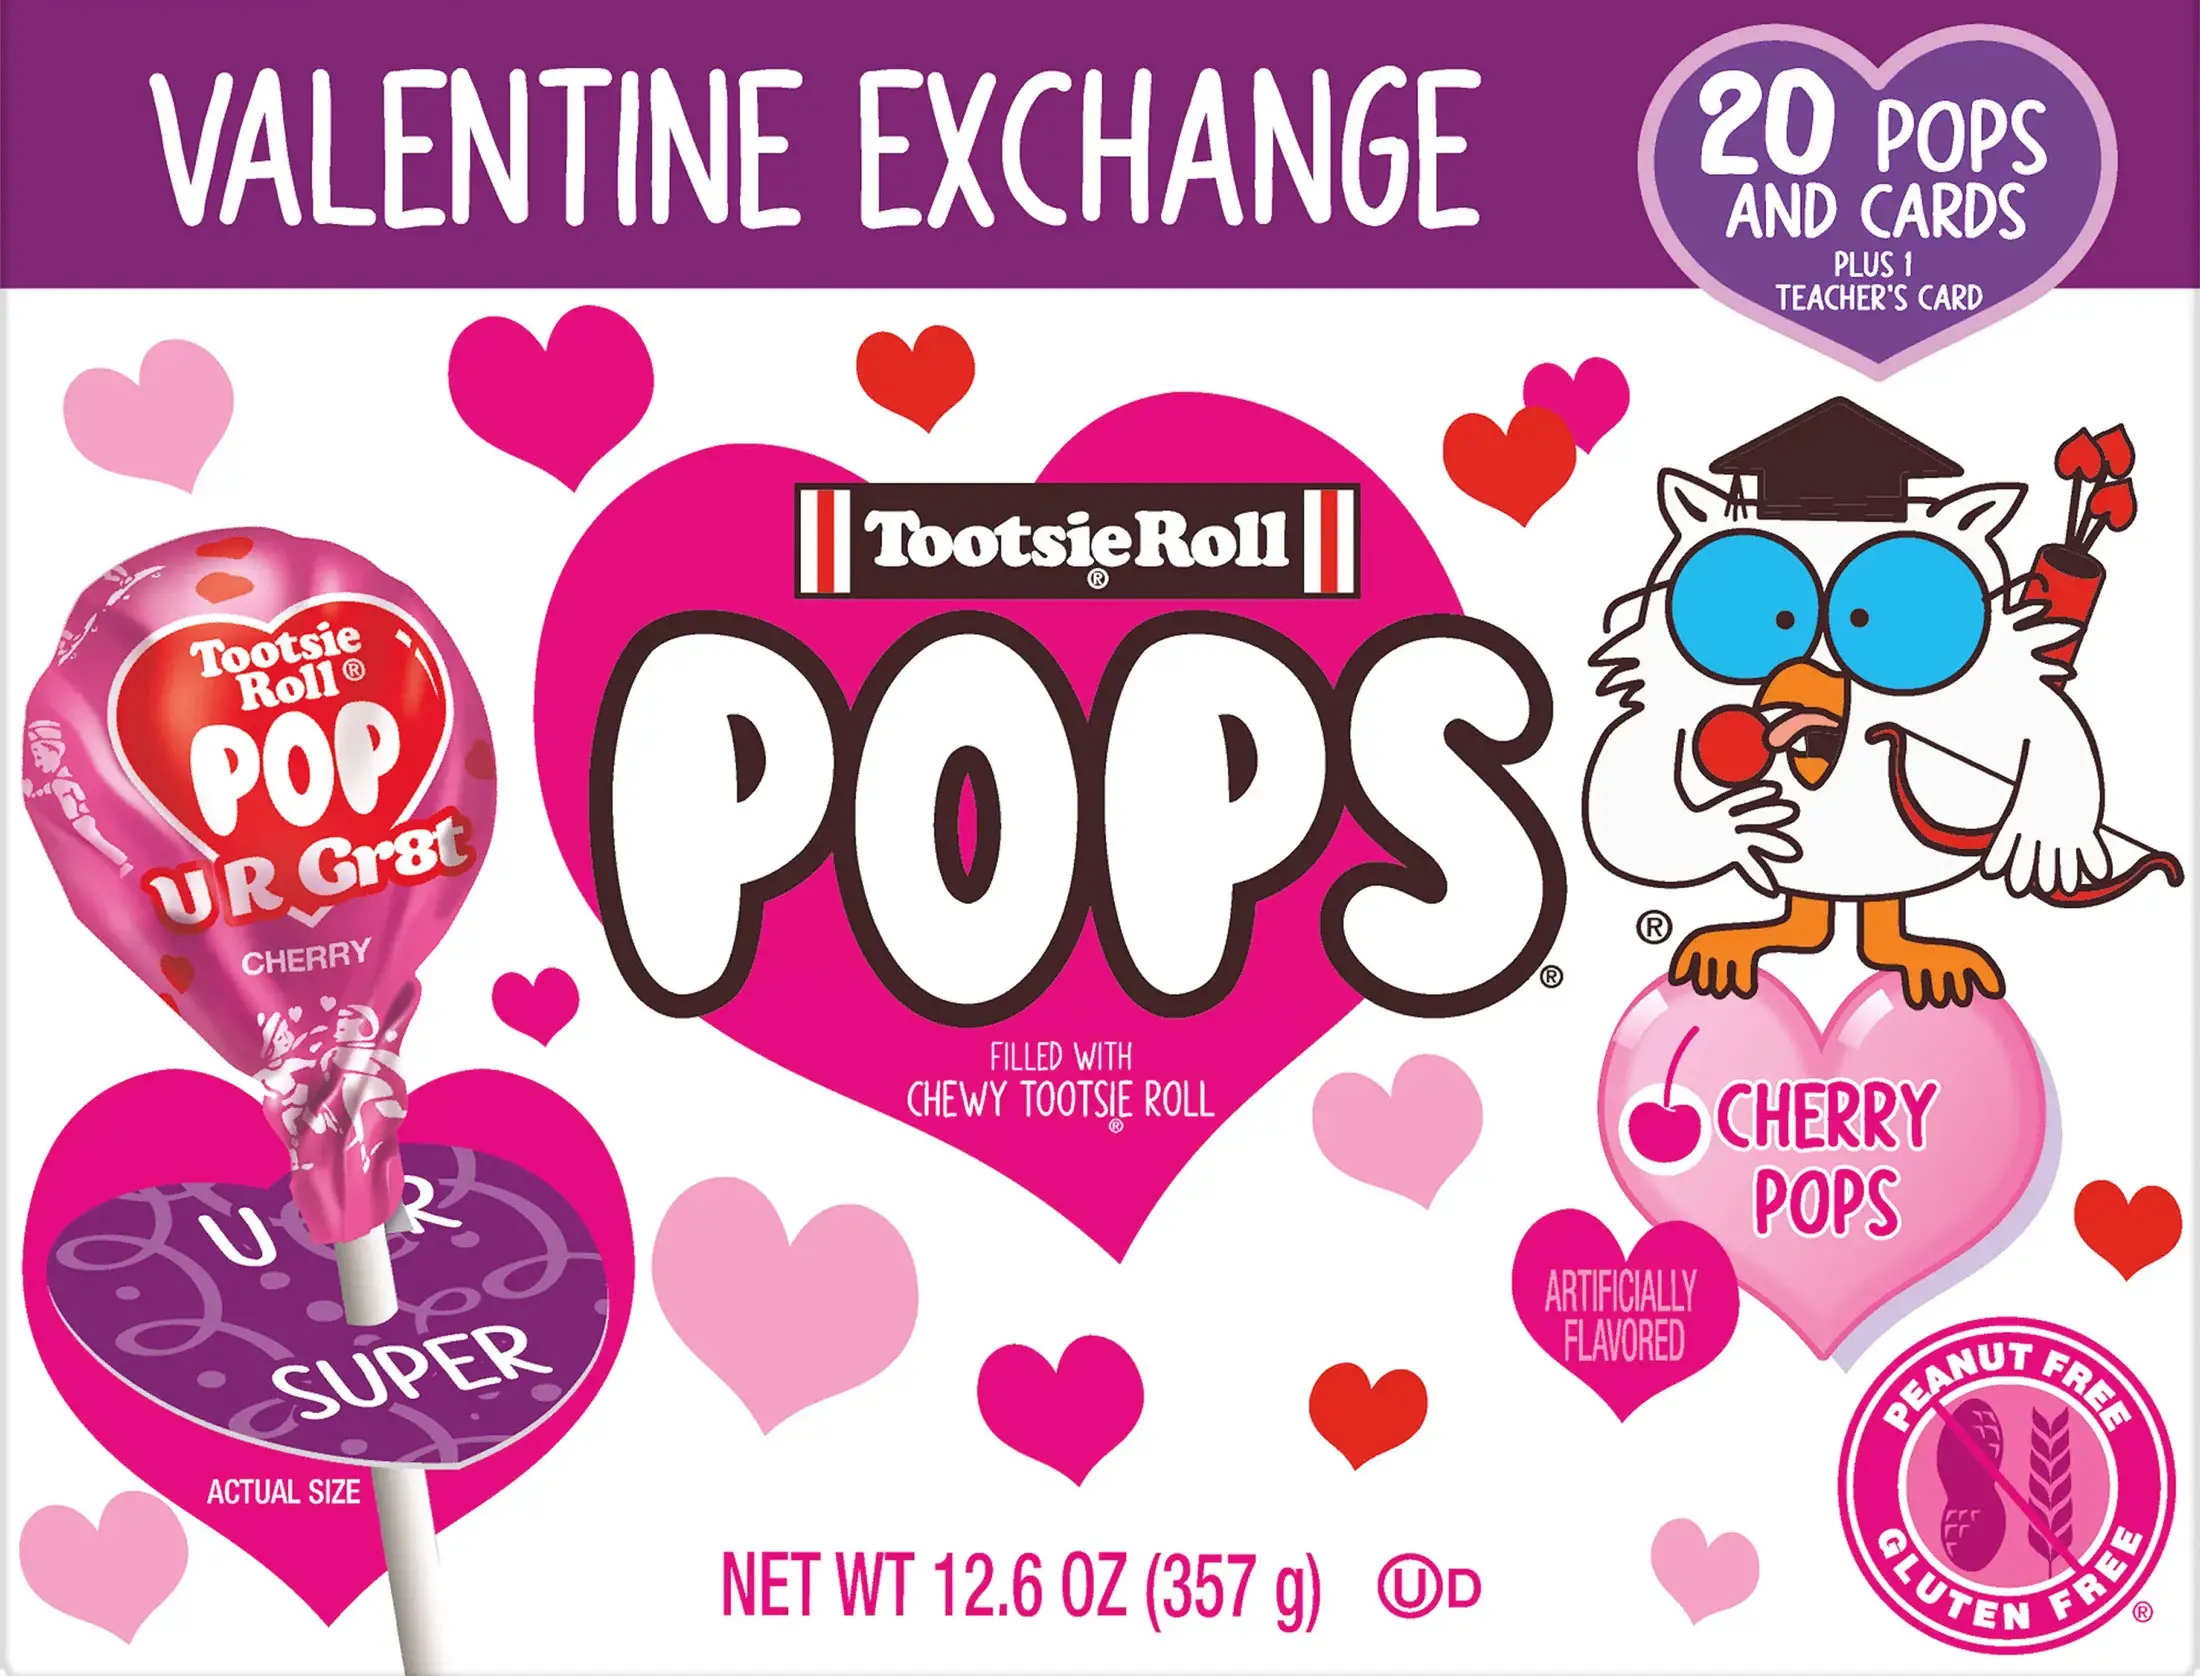 Tootsie Pop Valentine Friendship Exchange Kit Giveaway